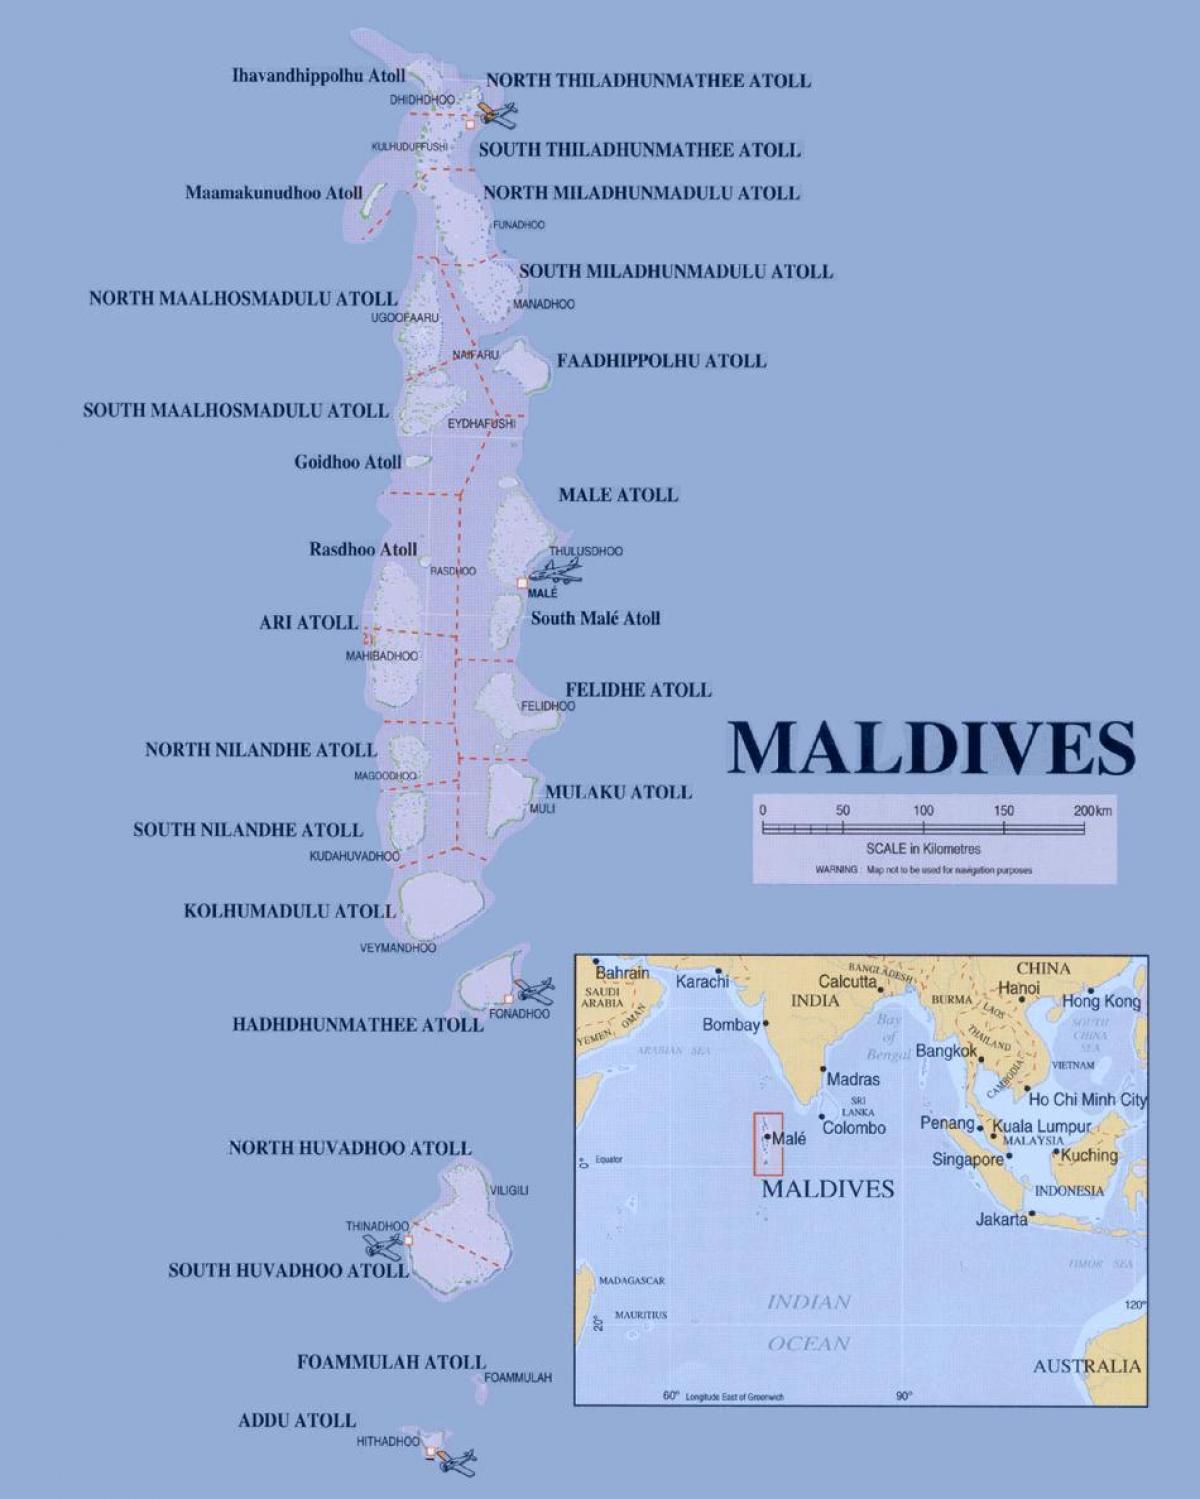 خريطة جزر المالديف السياسية